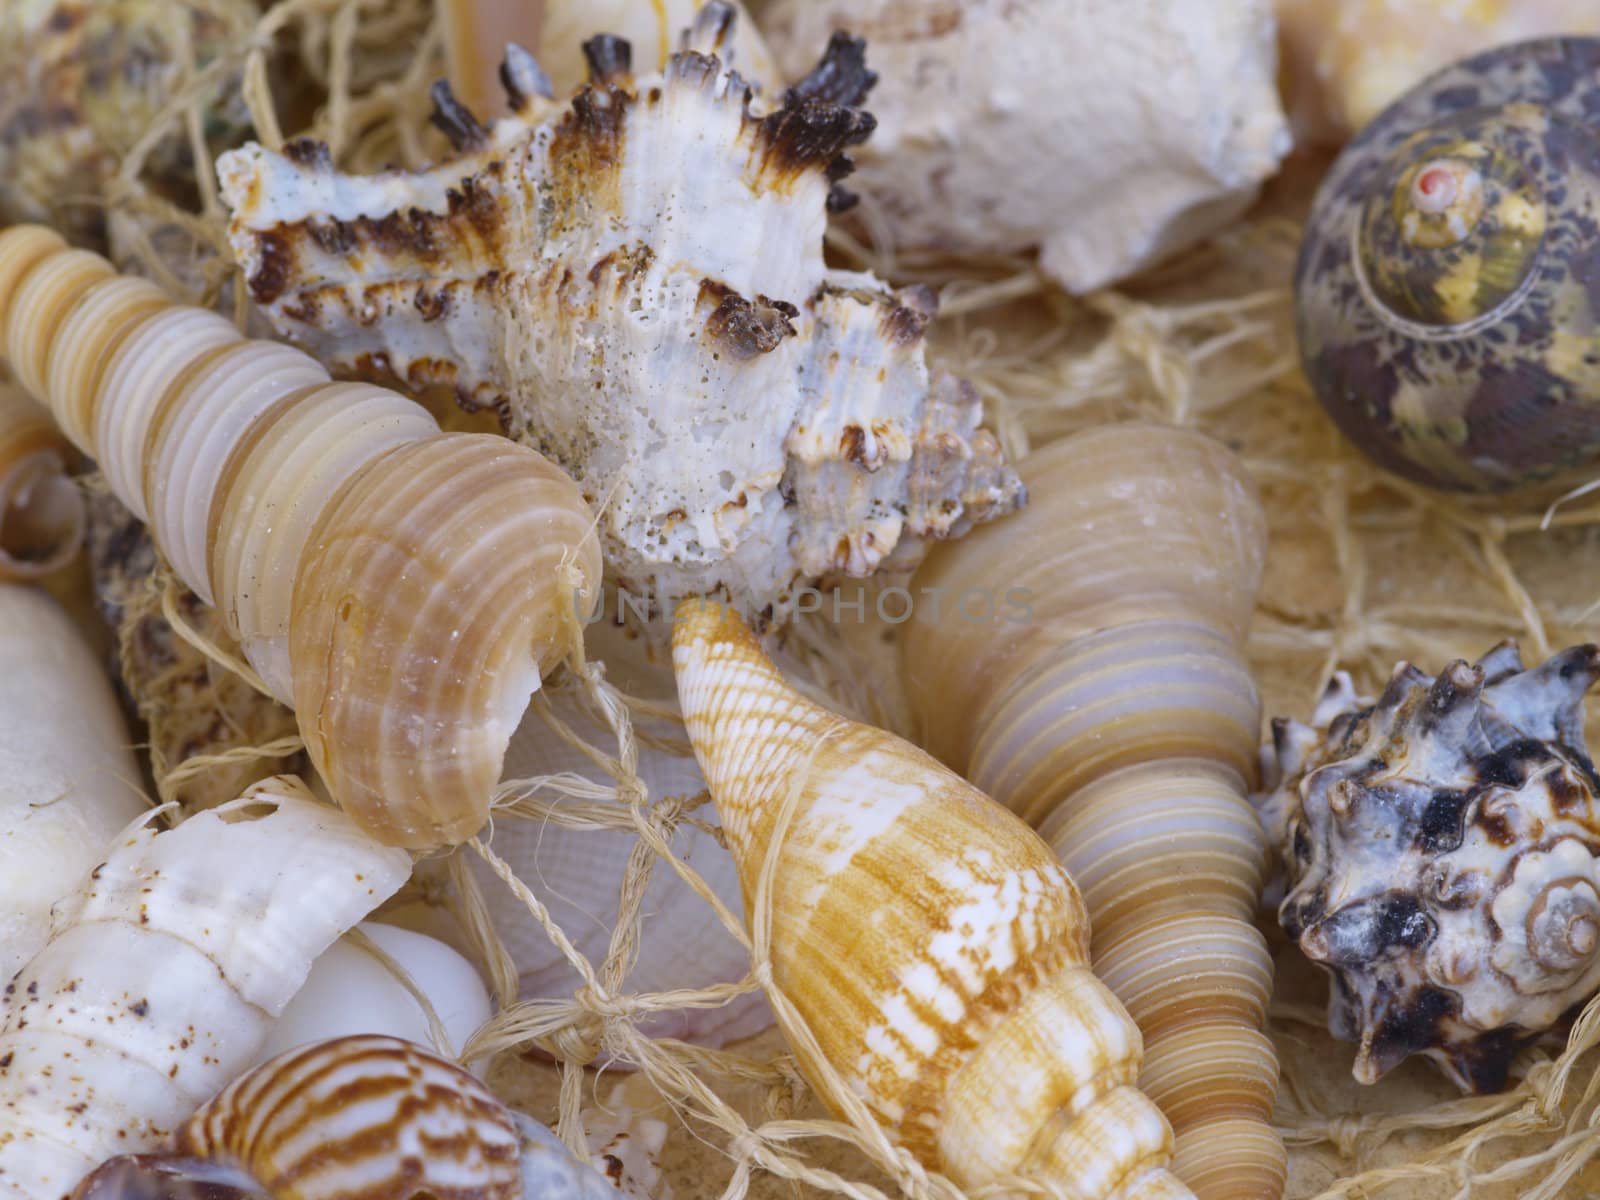 Snail shells in a net, background